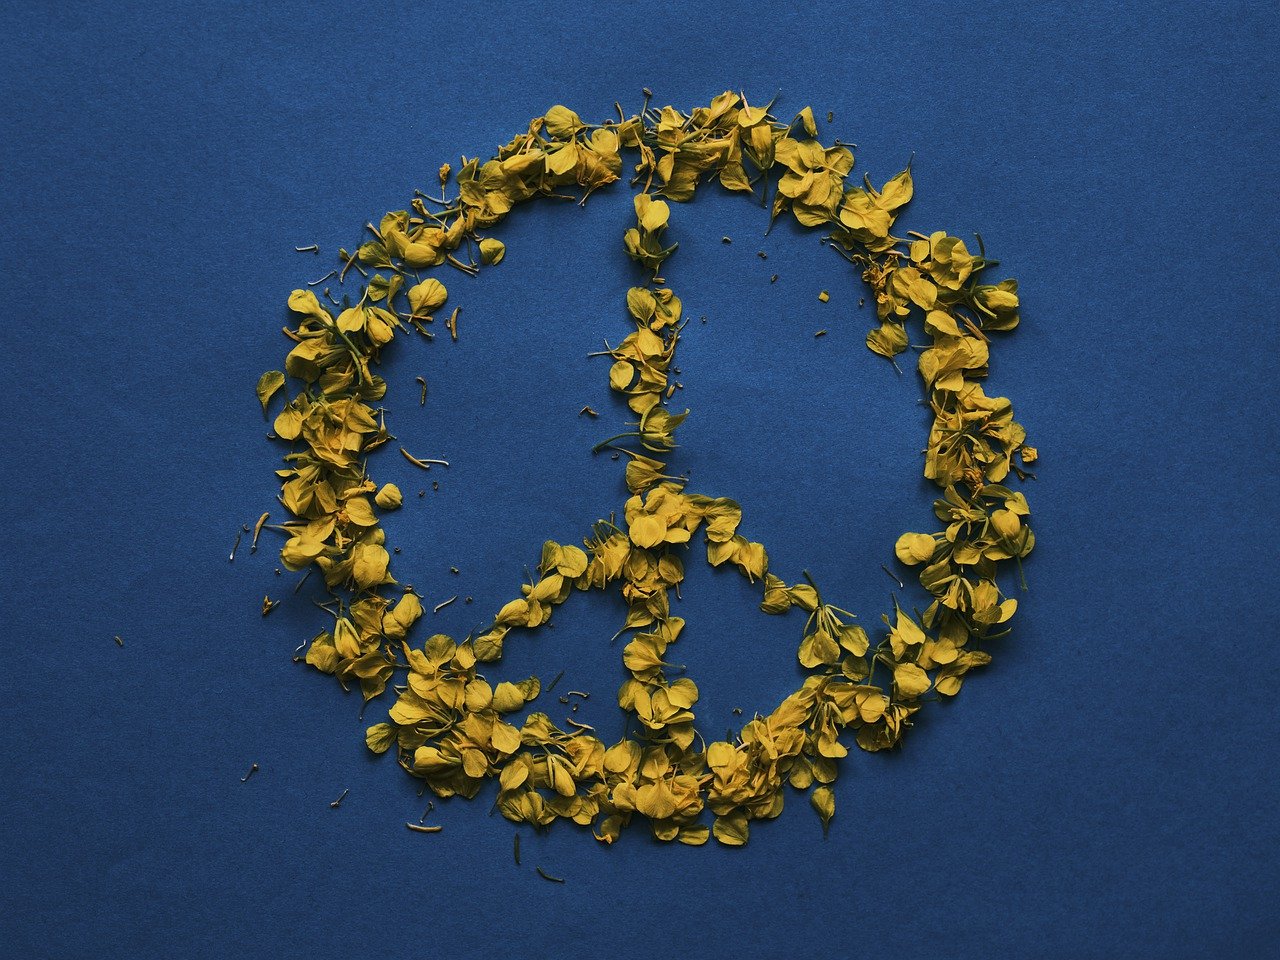 Ειρήνη (Εικόνα Pixabay)